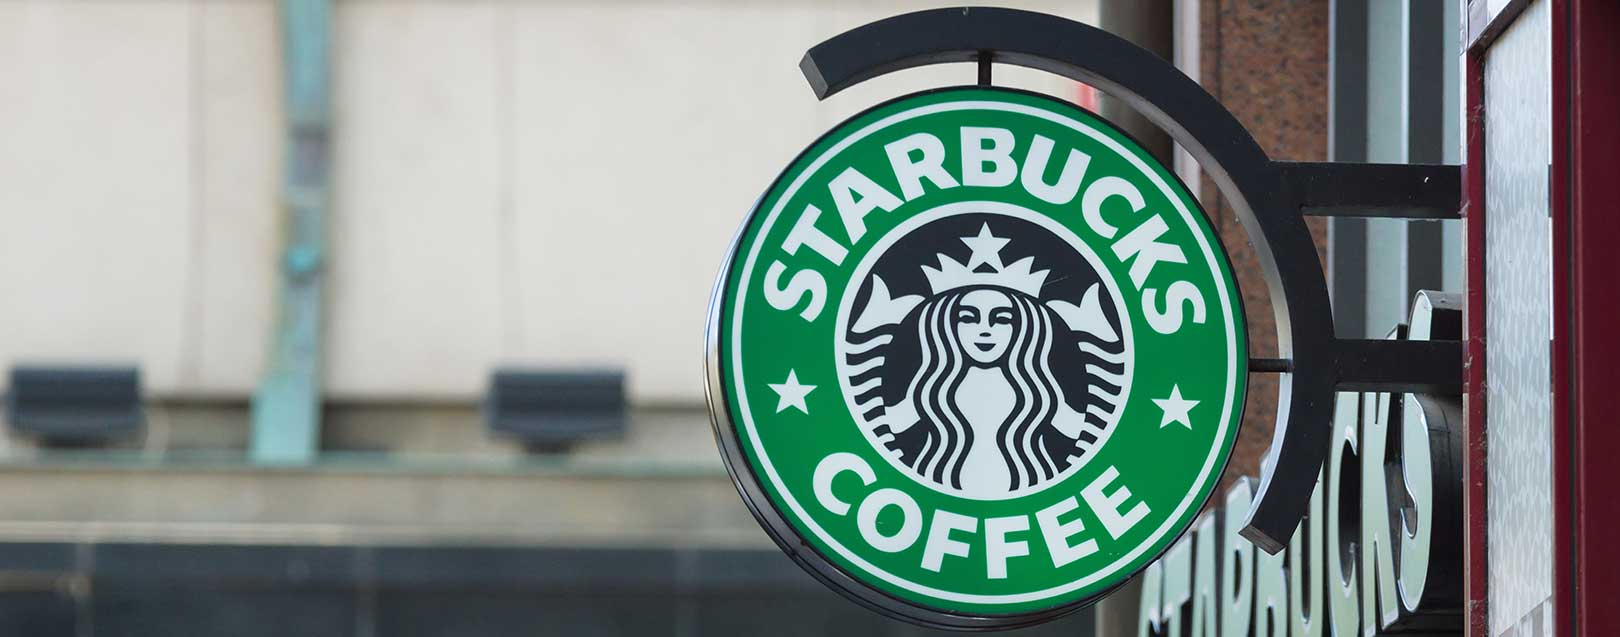 Tata, Starbucks take partnership beyond India